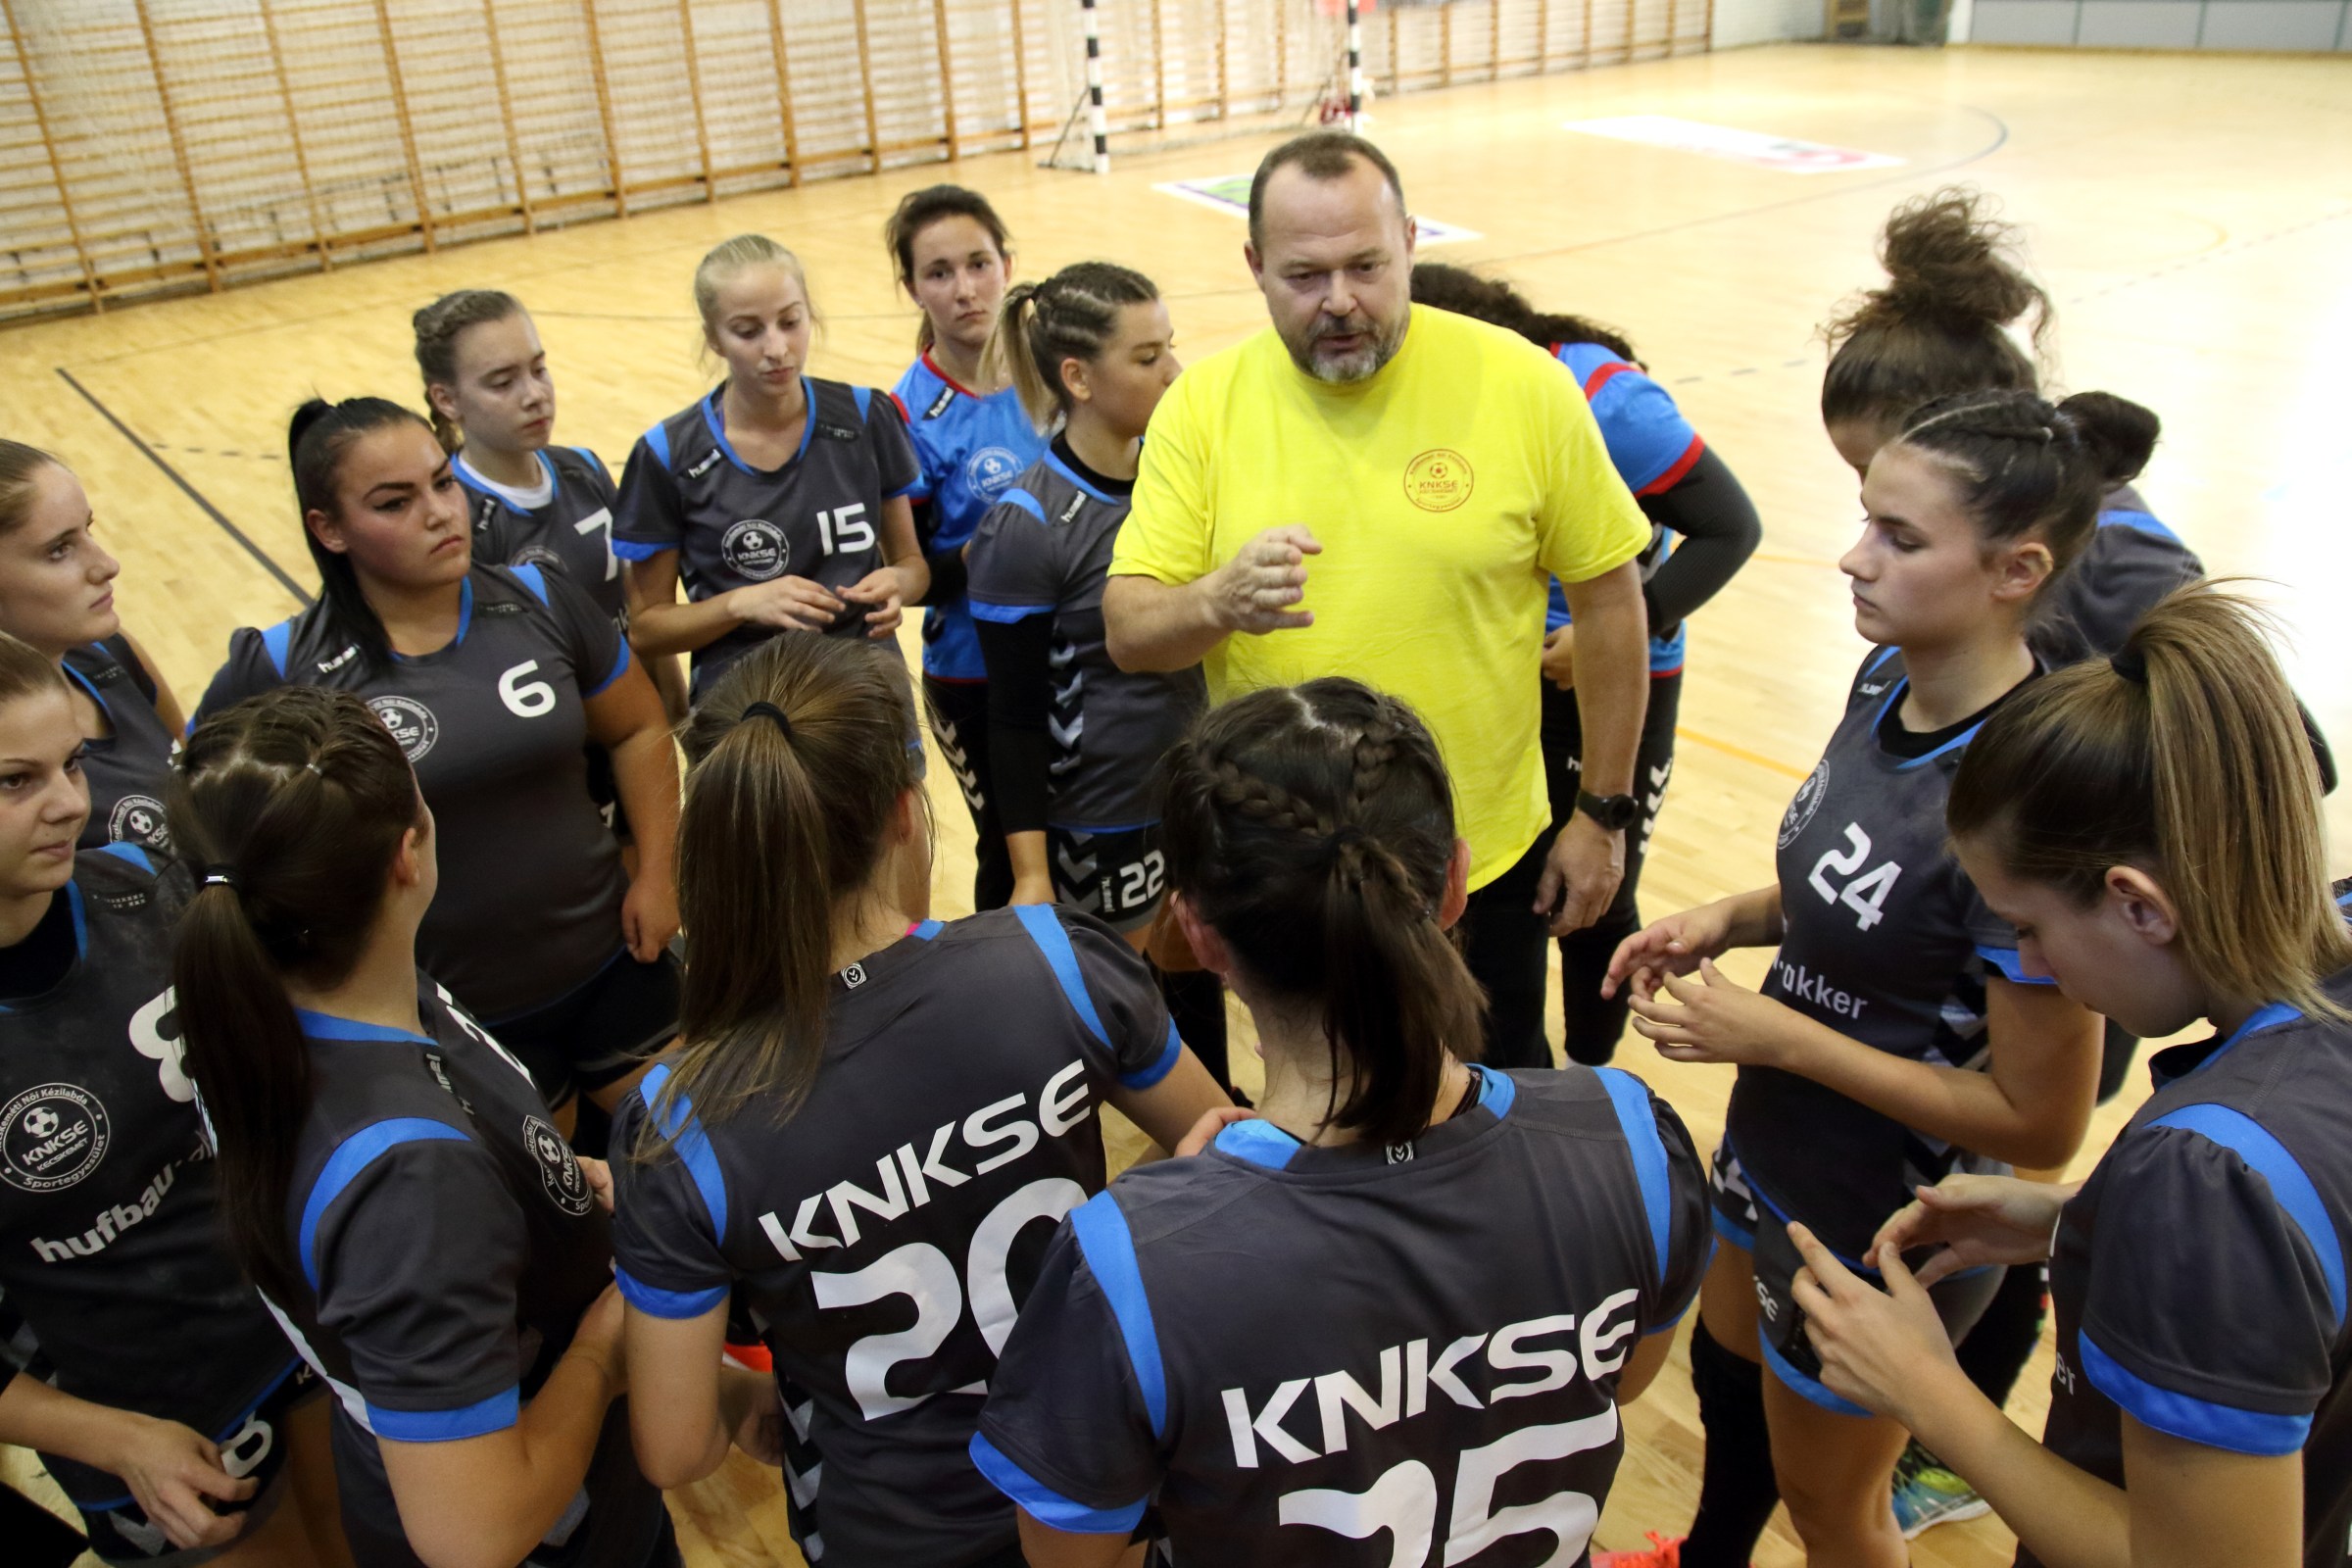 A Kecskeméti NKSE ifi csapata is lejátszotta első bajnoki mérkőzését